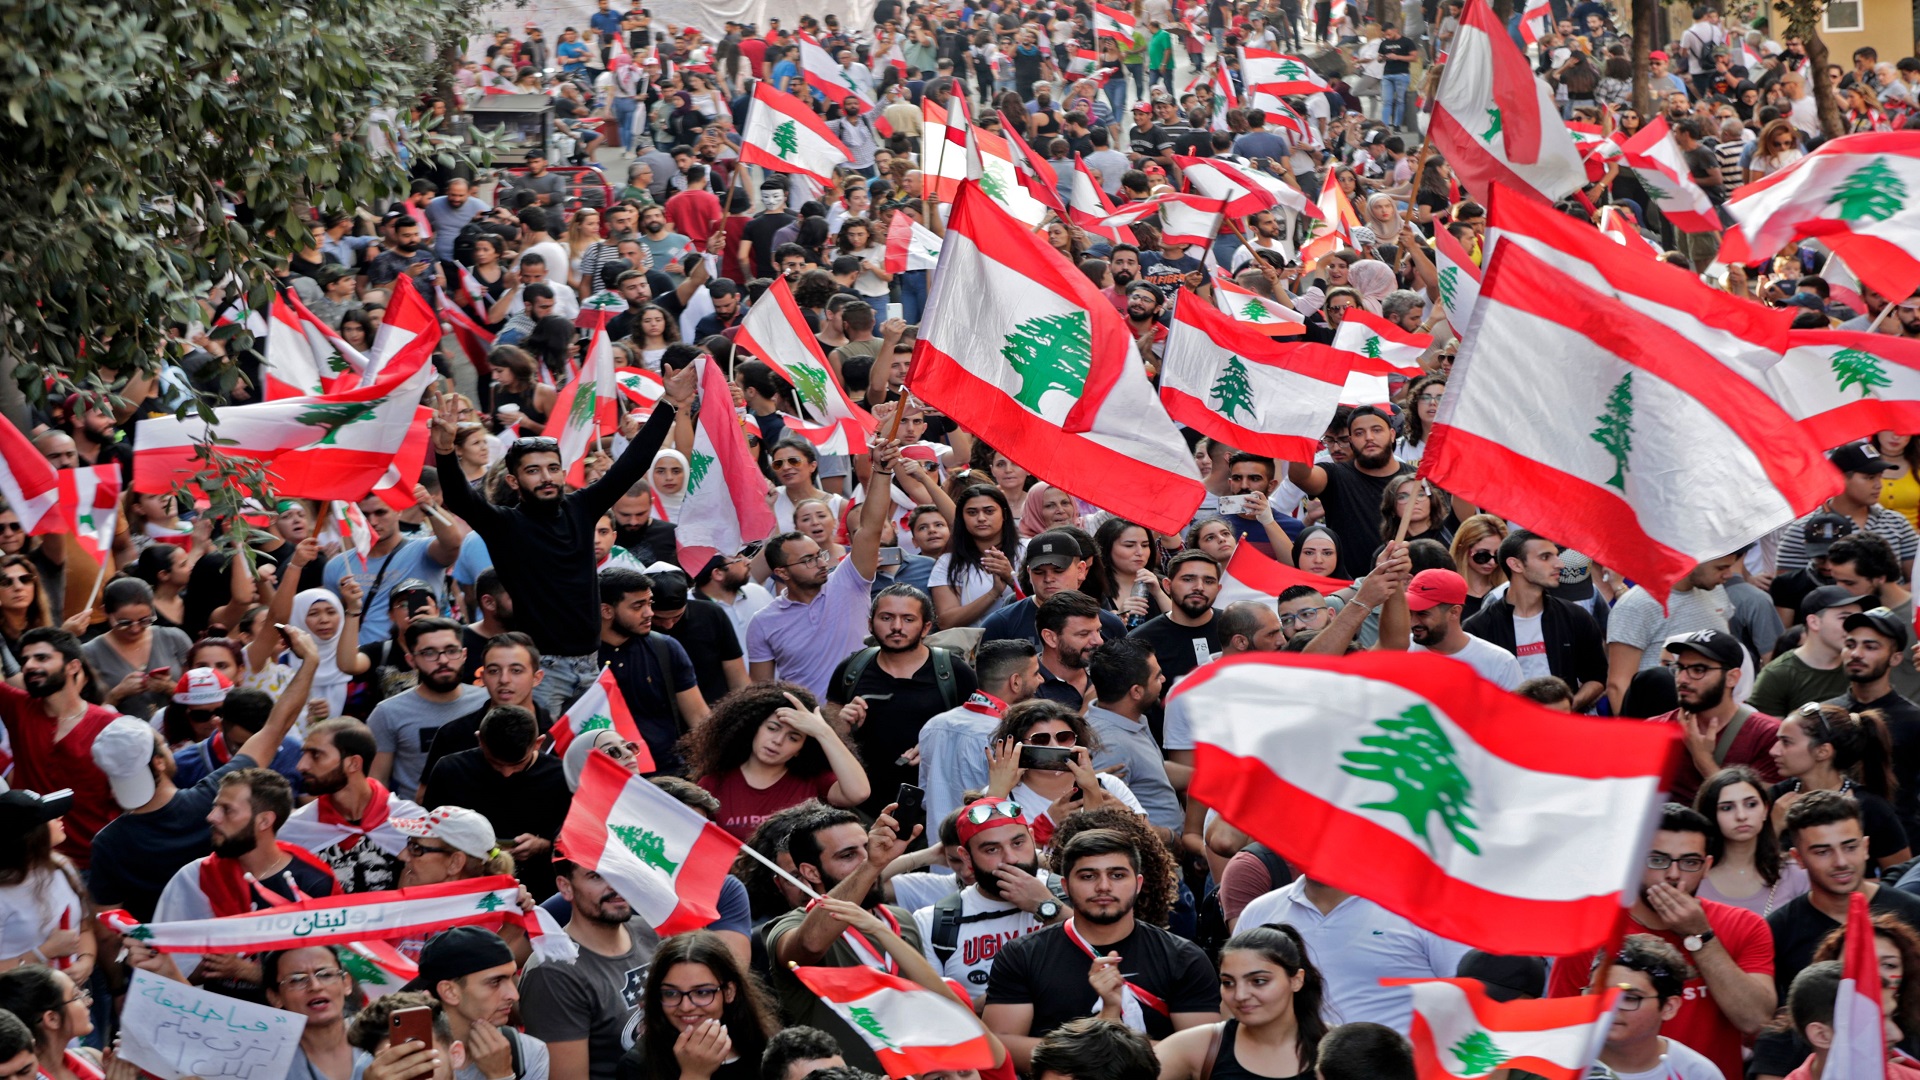 القوى الغربية:لامساعدات إلى لبنان بدون تشكيل حكومة تتمتع بالمصداقية وإجراء الإصلاح